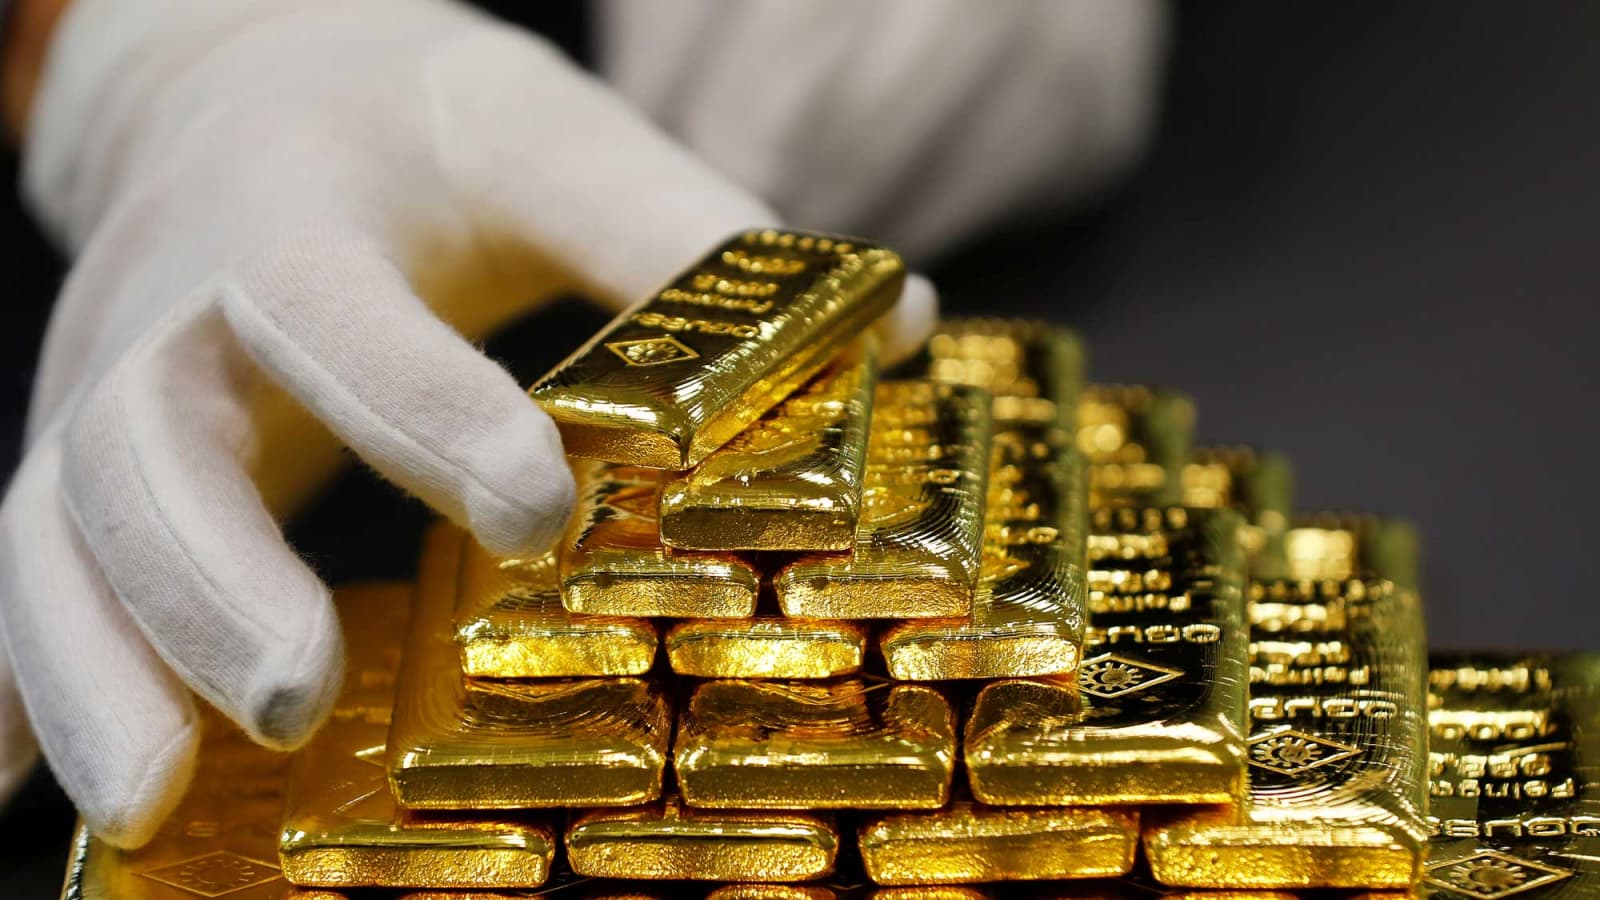 قیمت طلا امروز چند است؟ (یکشنبه 28 شهریور 1400)